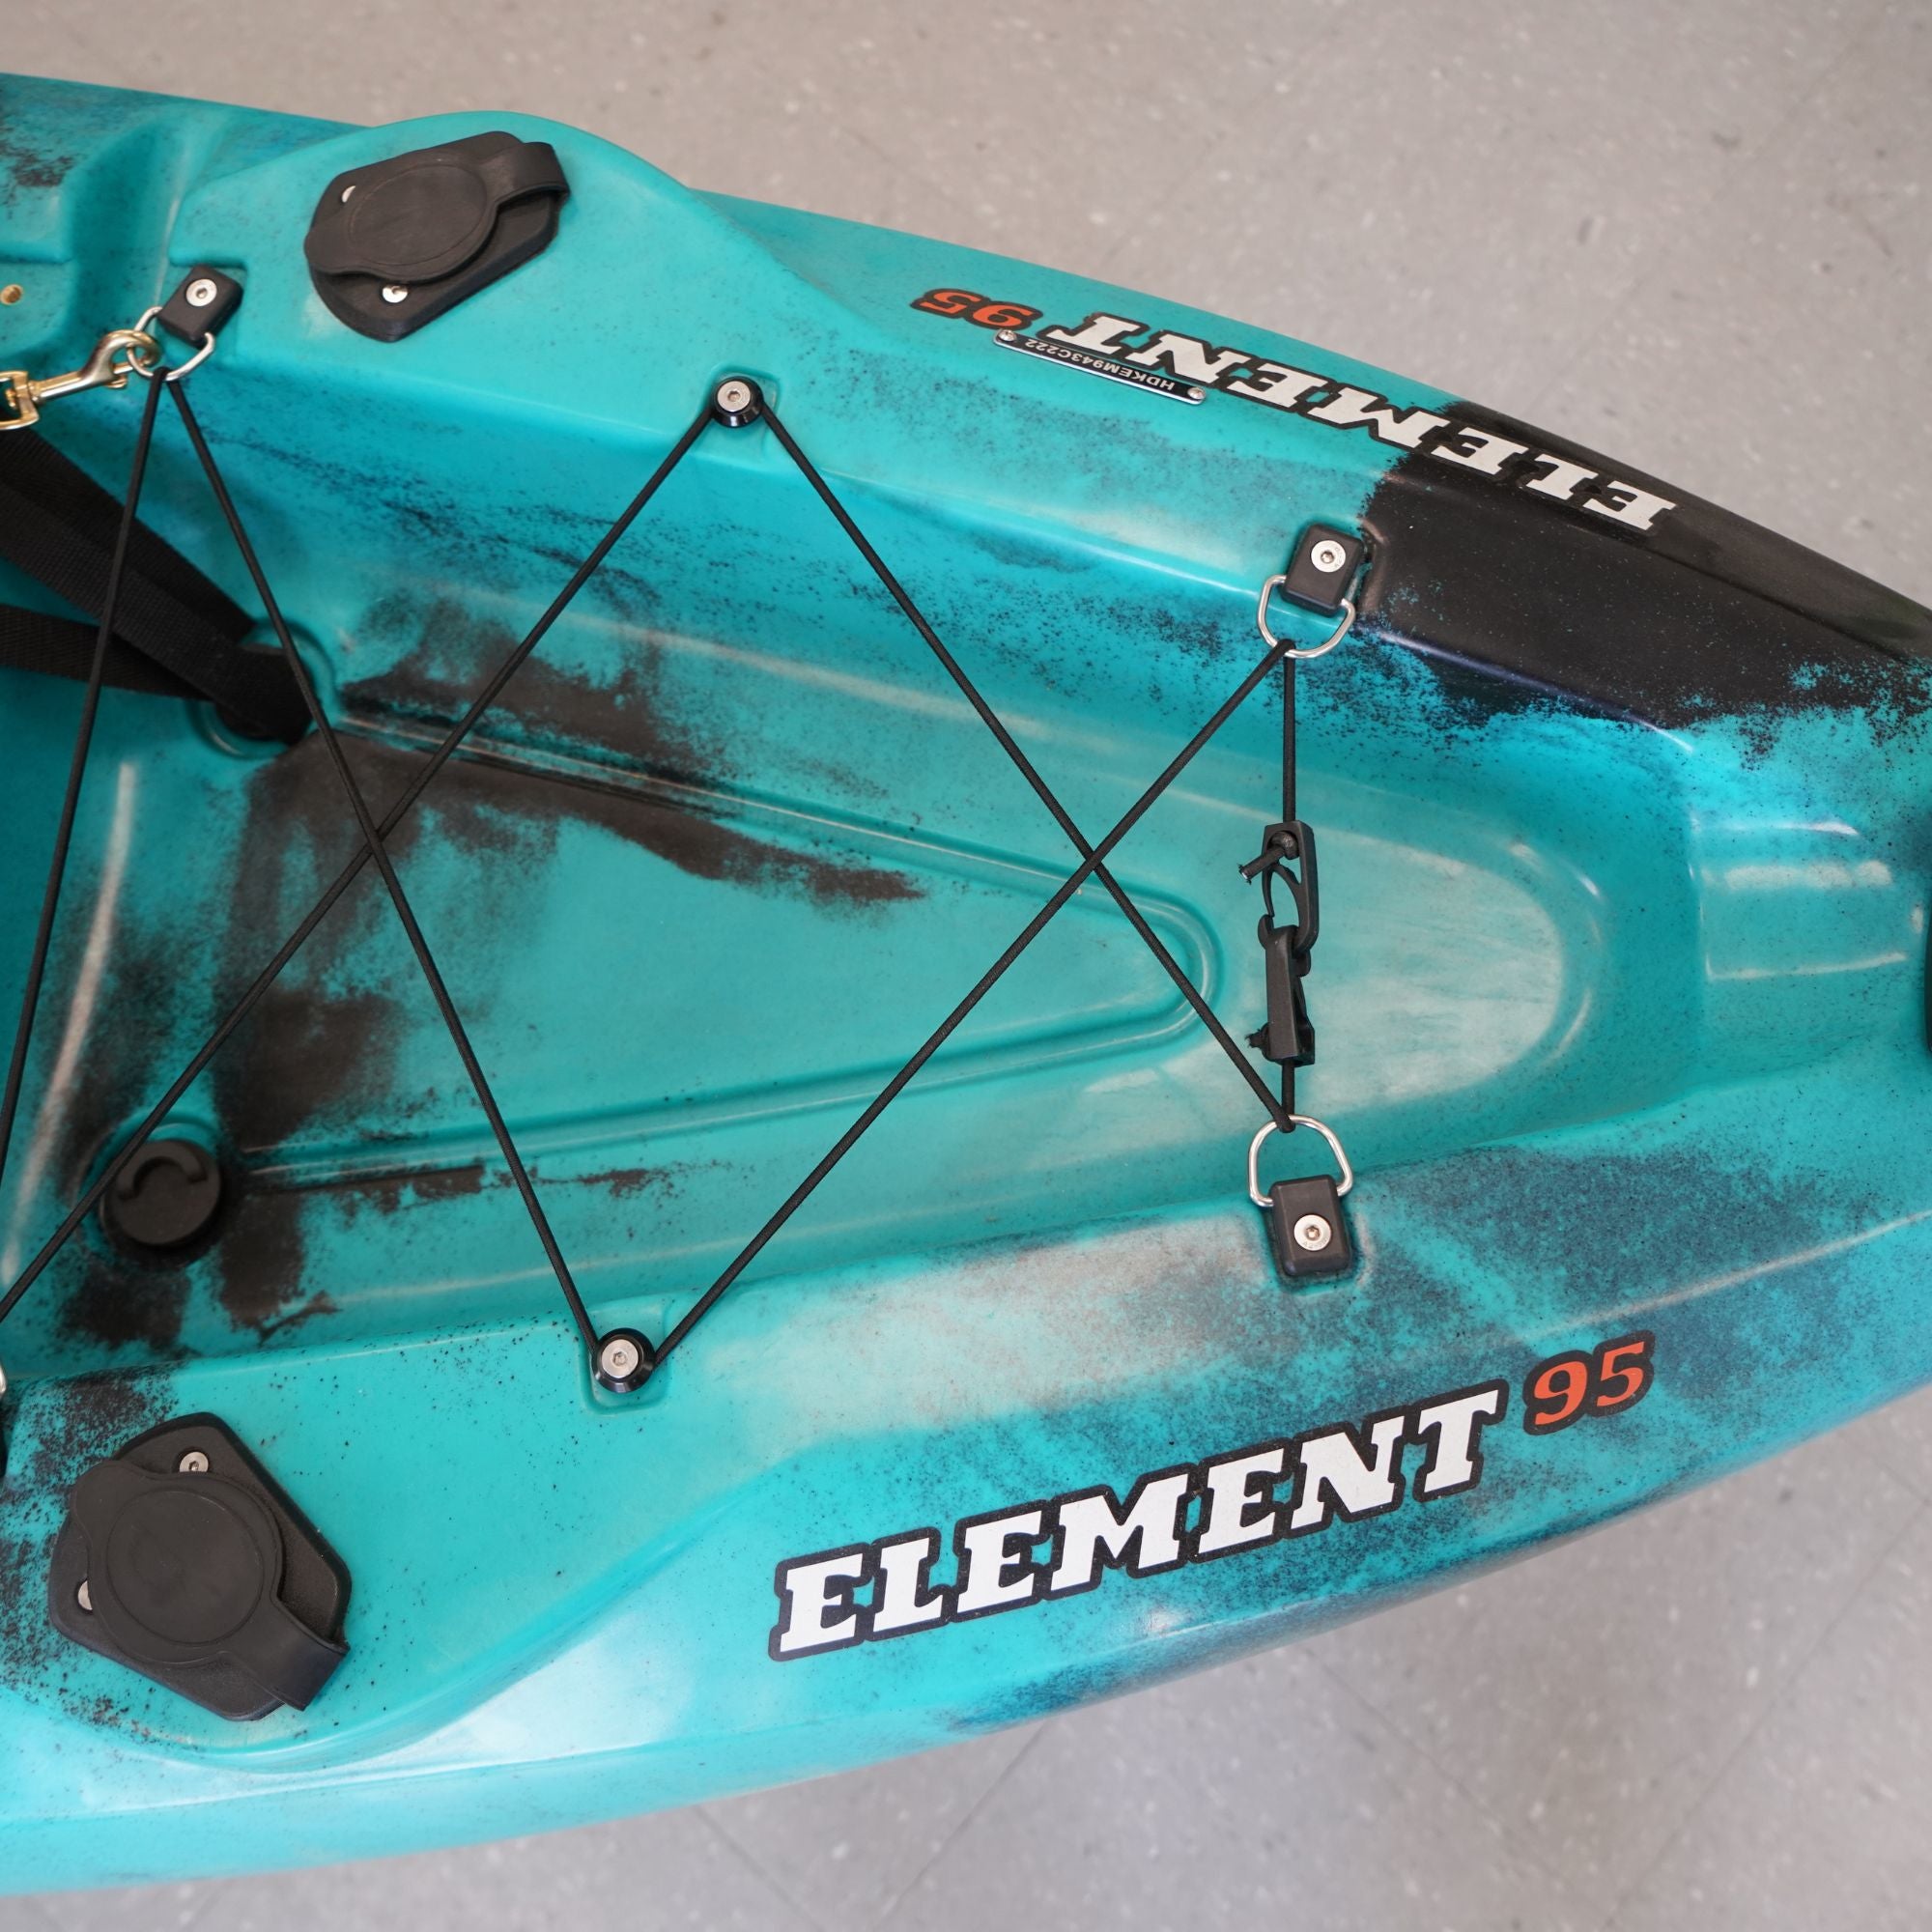 Hoodoo Element 95 Sit On Top Kayak